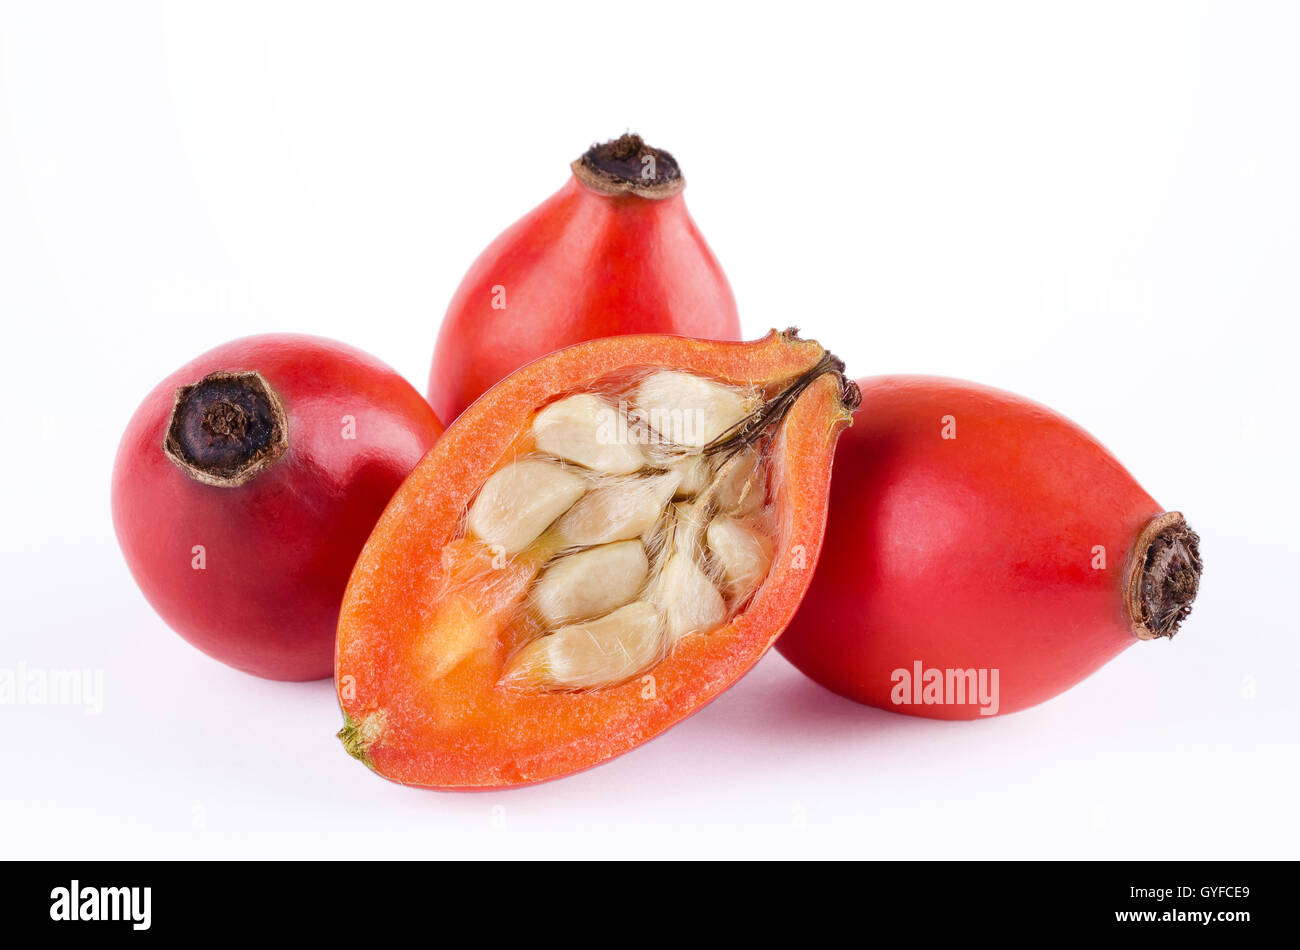 Hagebutten mit Obst Querschnitt über weiß. Rose Haw oder Rose hep. Reifen roten Früchten, Samen mit Haaren zeigen. Stockfoto